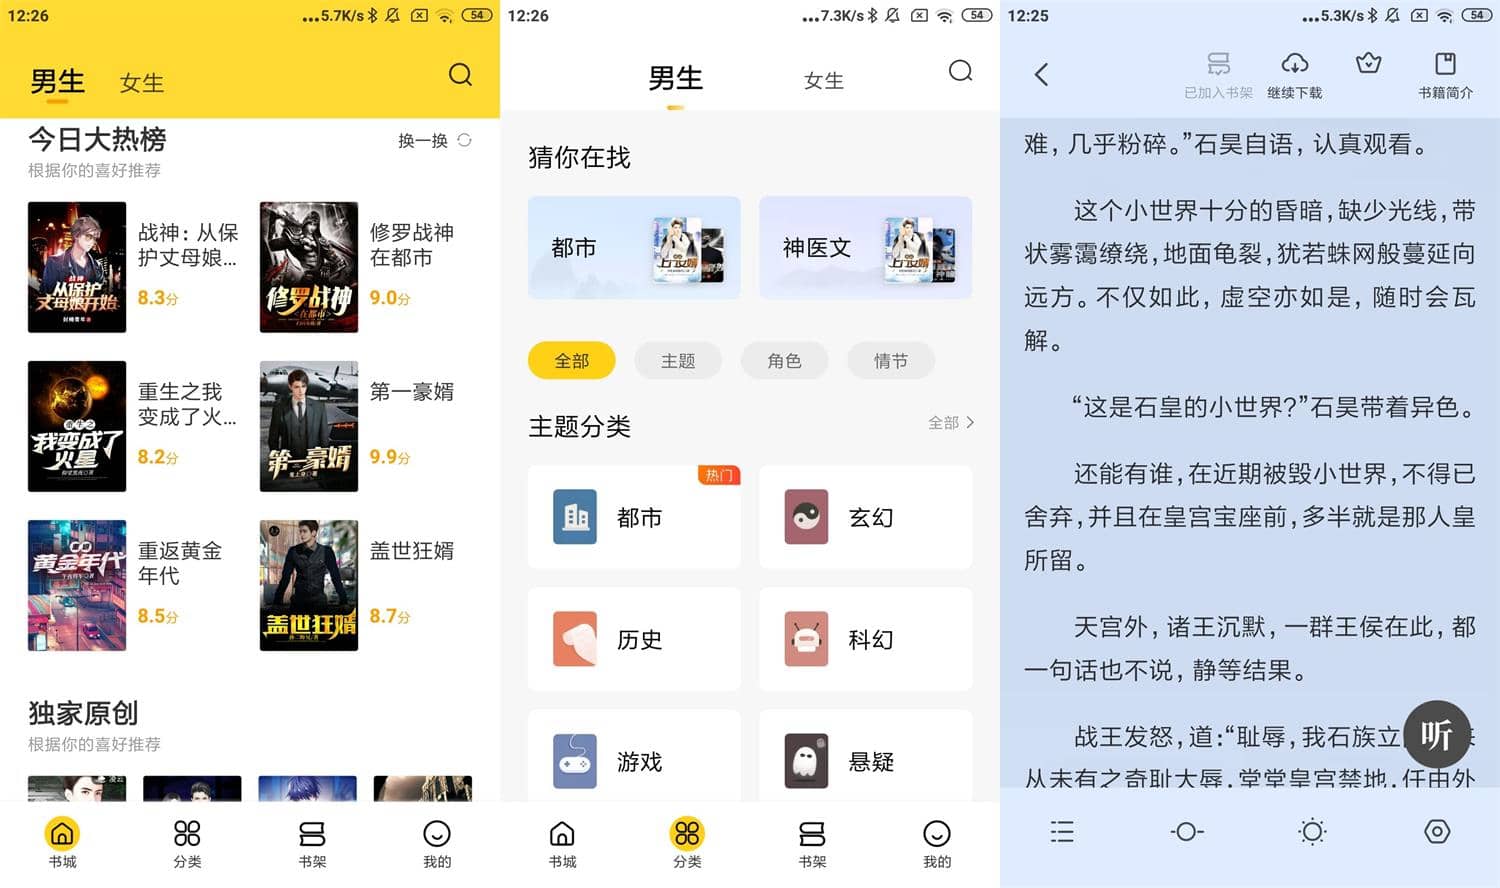 Android 全民小说 v7.24.27 去除广告会员破解版